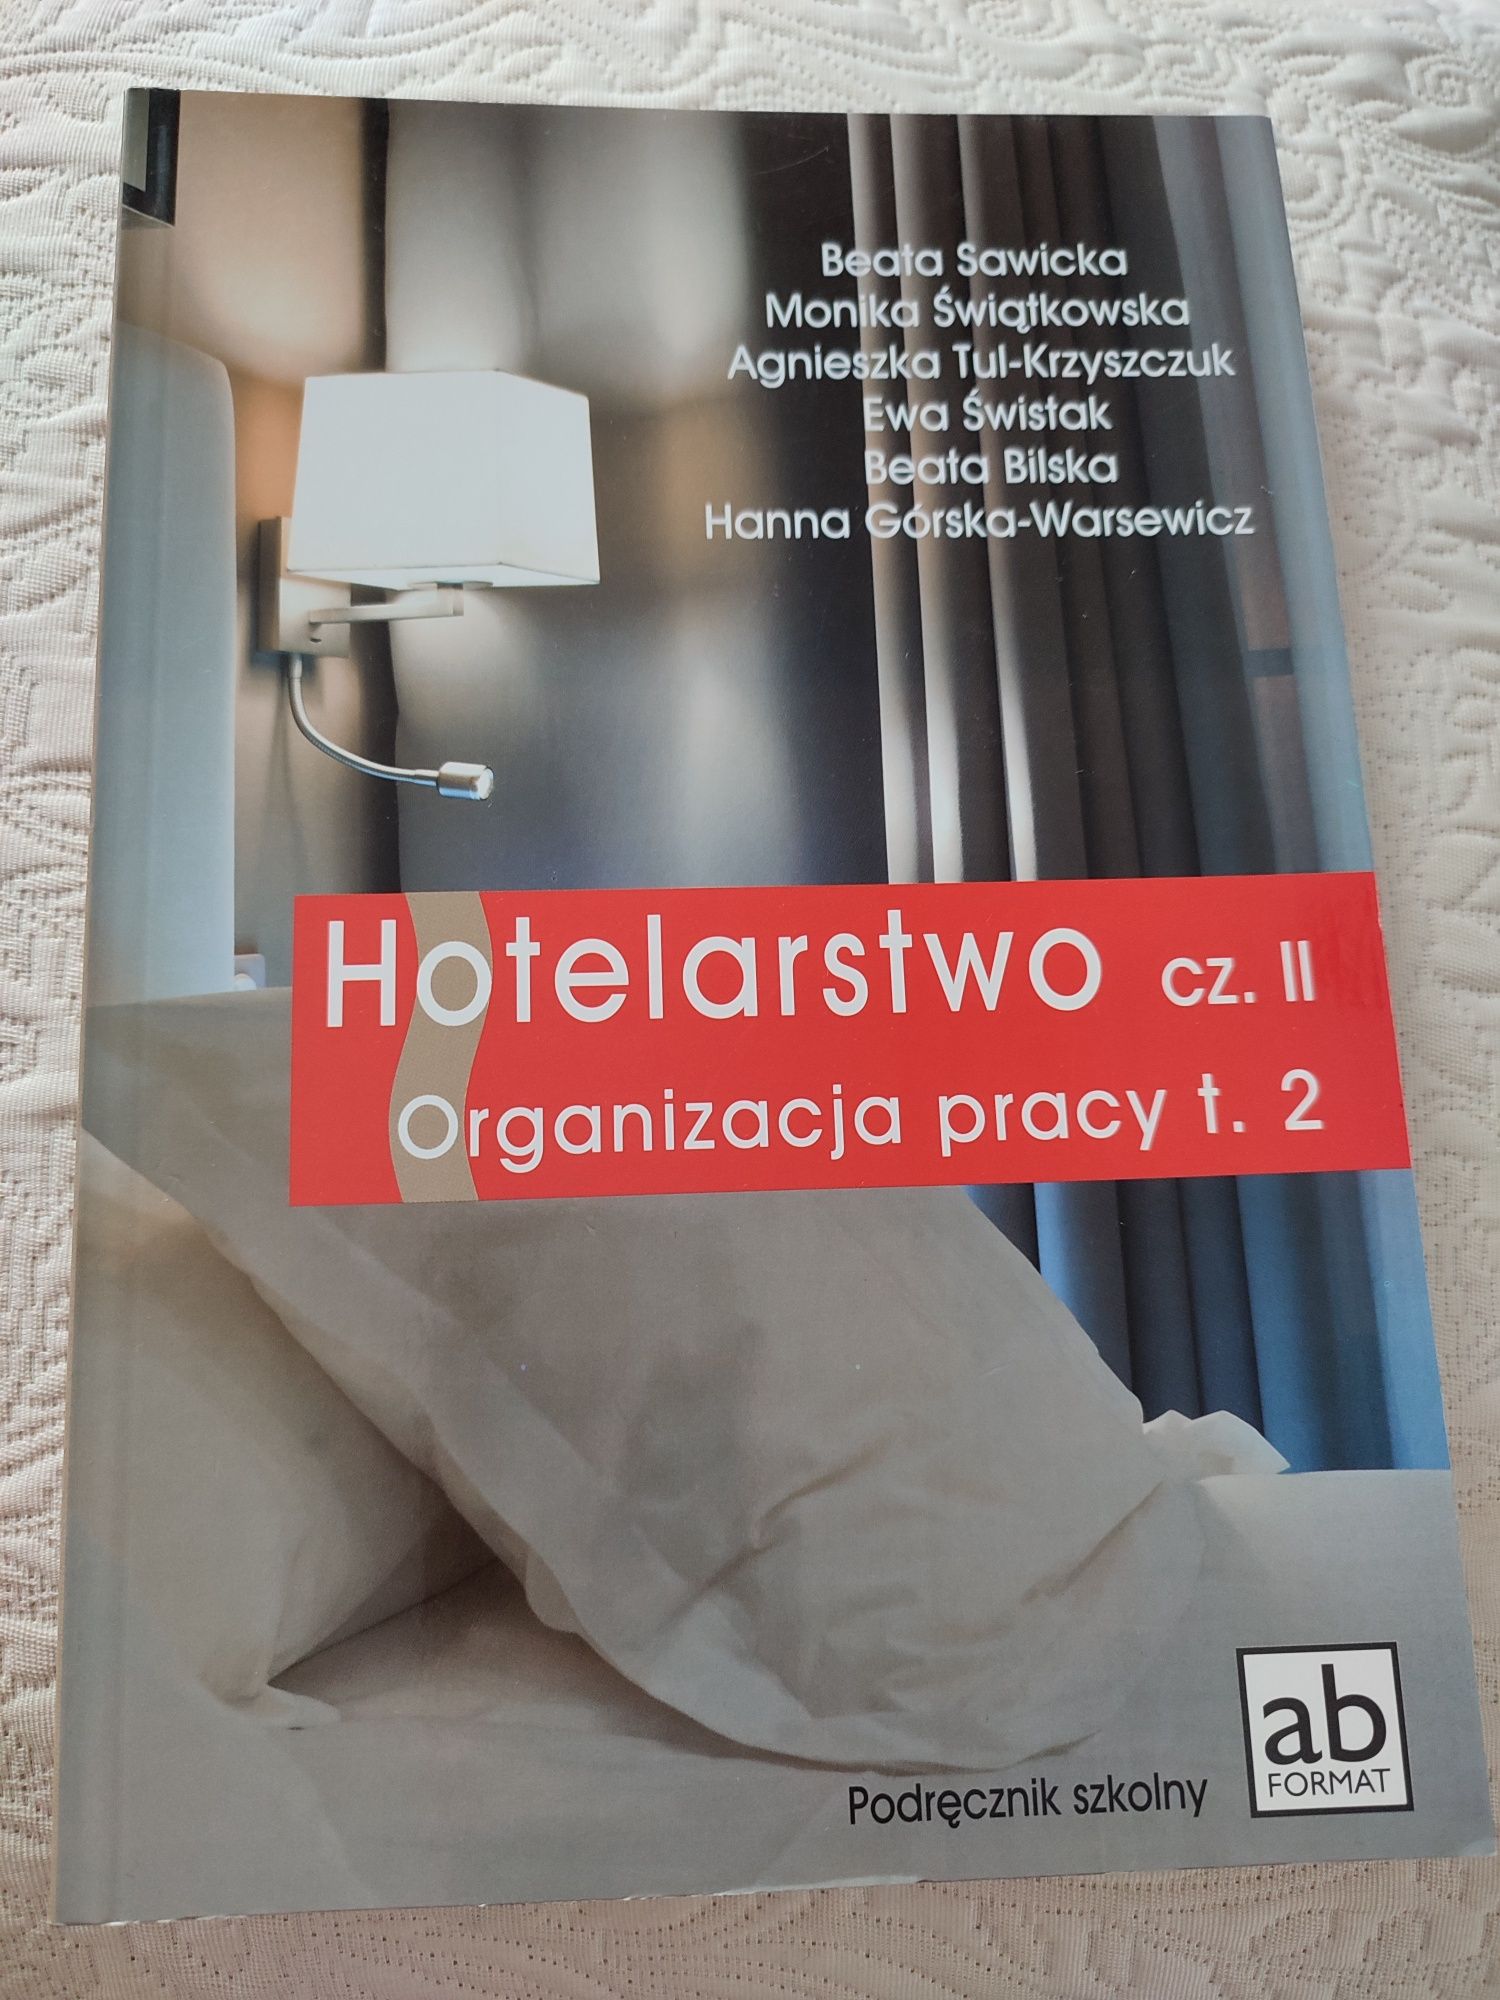 Hotelarstwo cz.2 organizacja pracy t.2